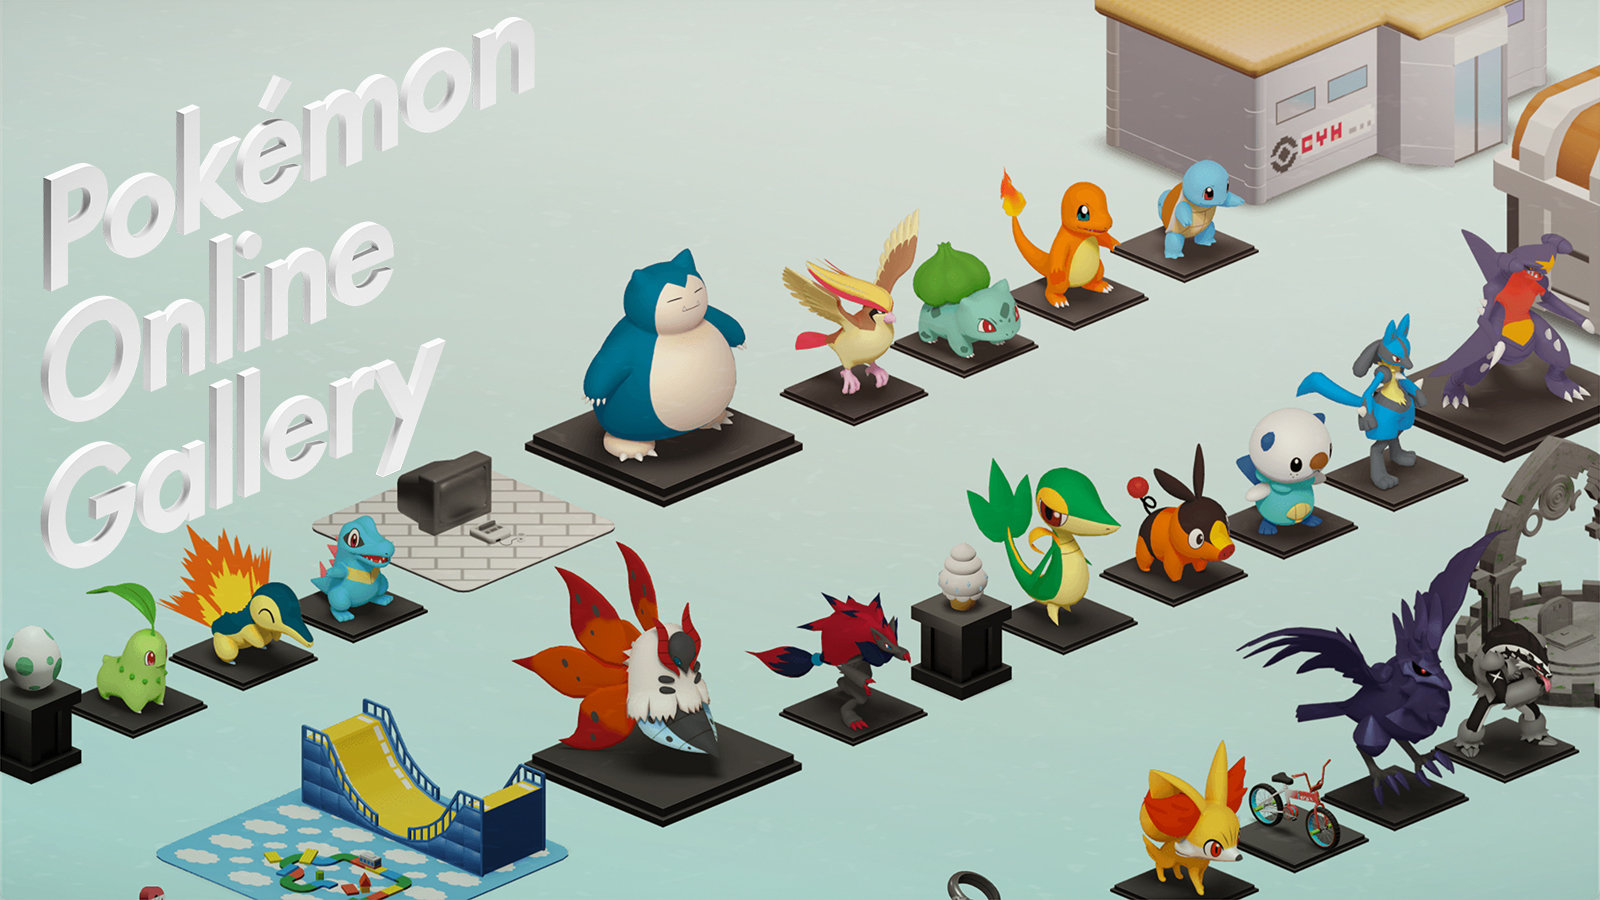 歴代のポケモンの世界観を振り返るバーチャルギャラリー「Pokémon Online Gallery」が公開